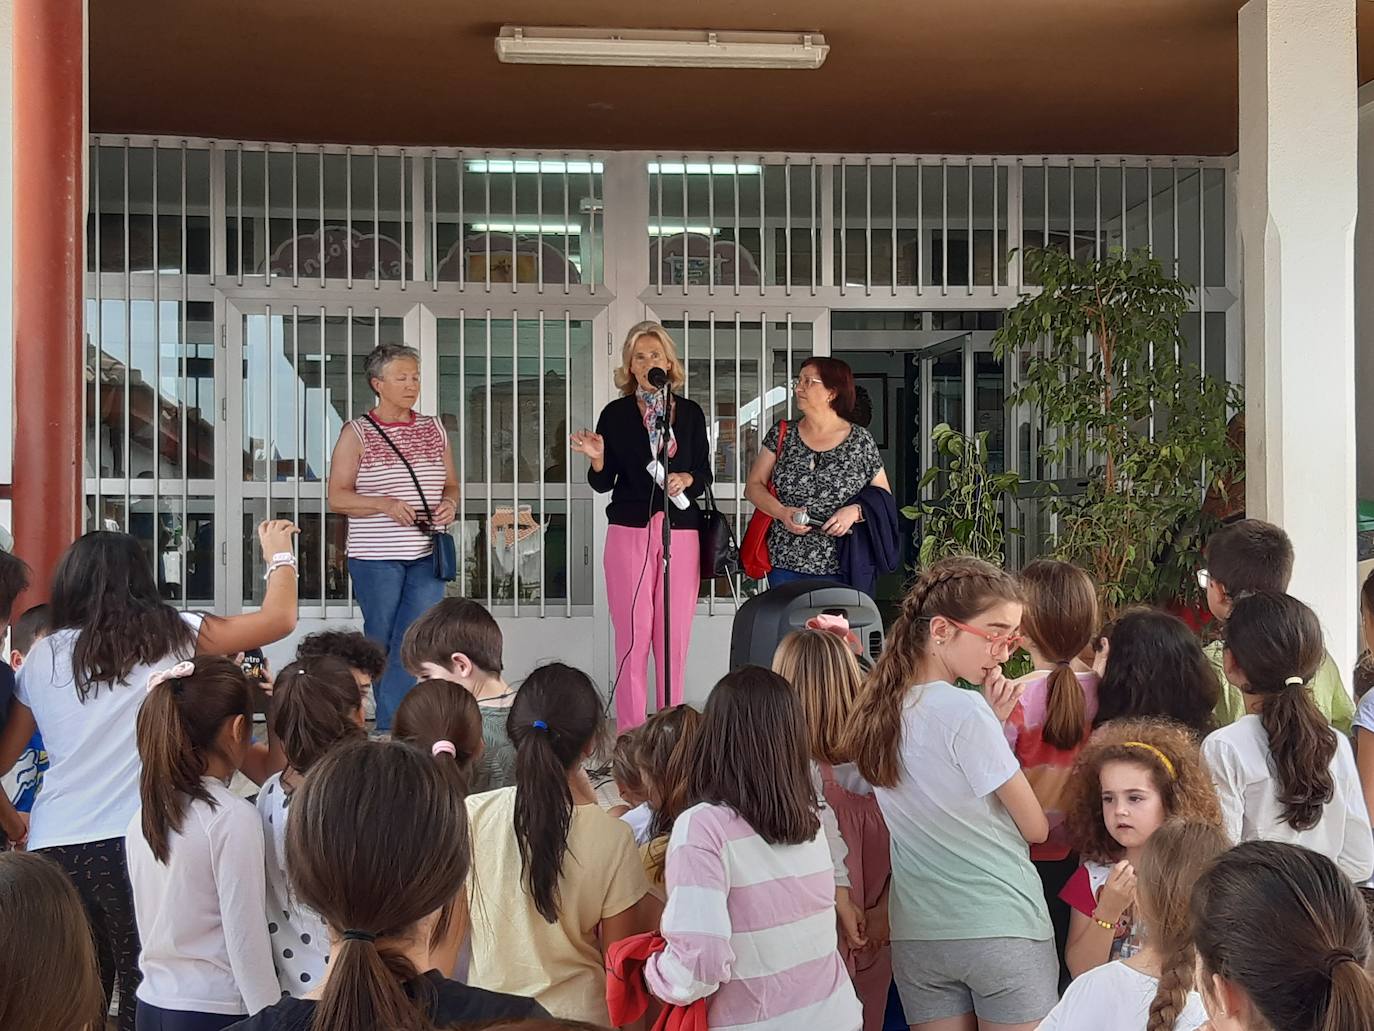 Imagen secundaria 2 - El colegio León Leal inaugura las bibliotecas de Infantil y Primaria